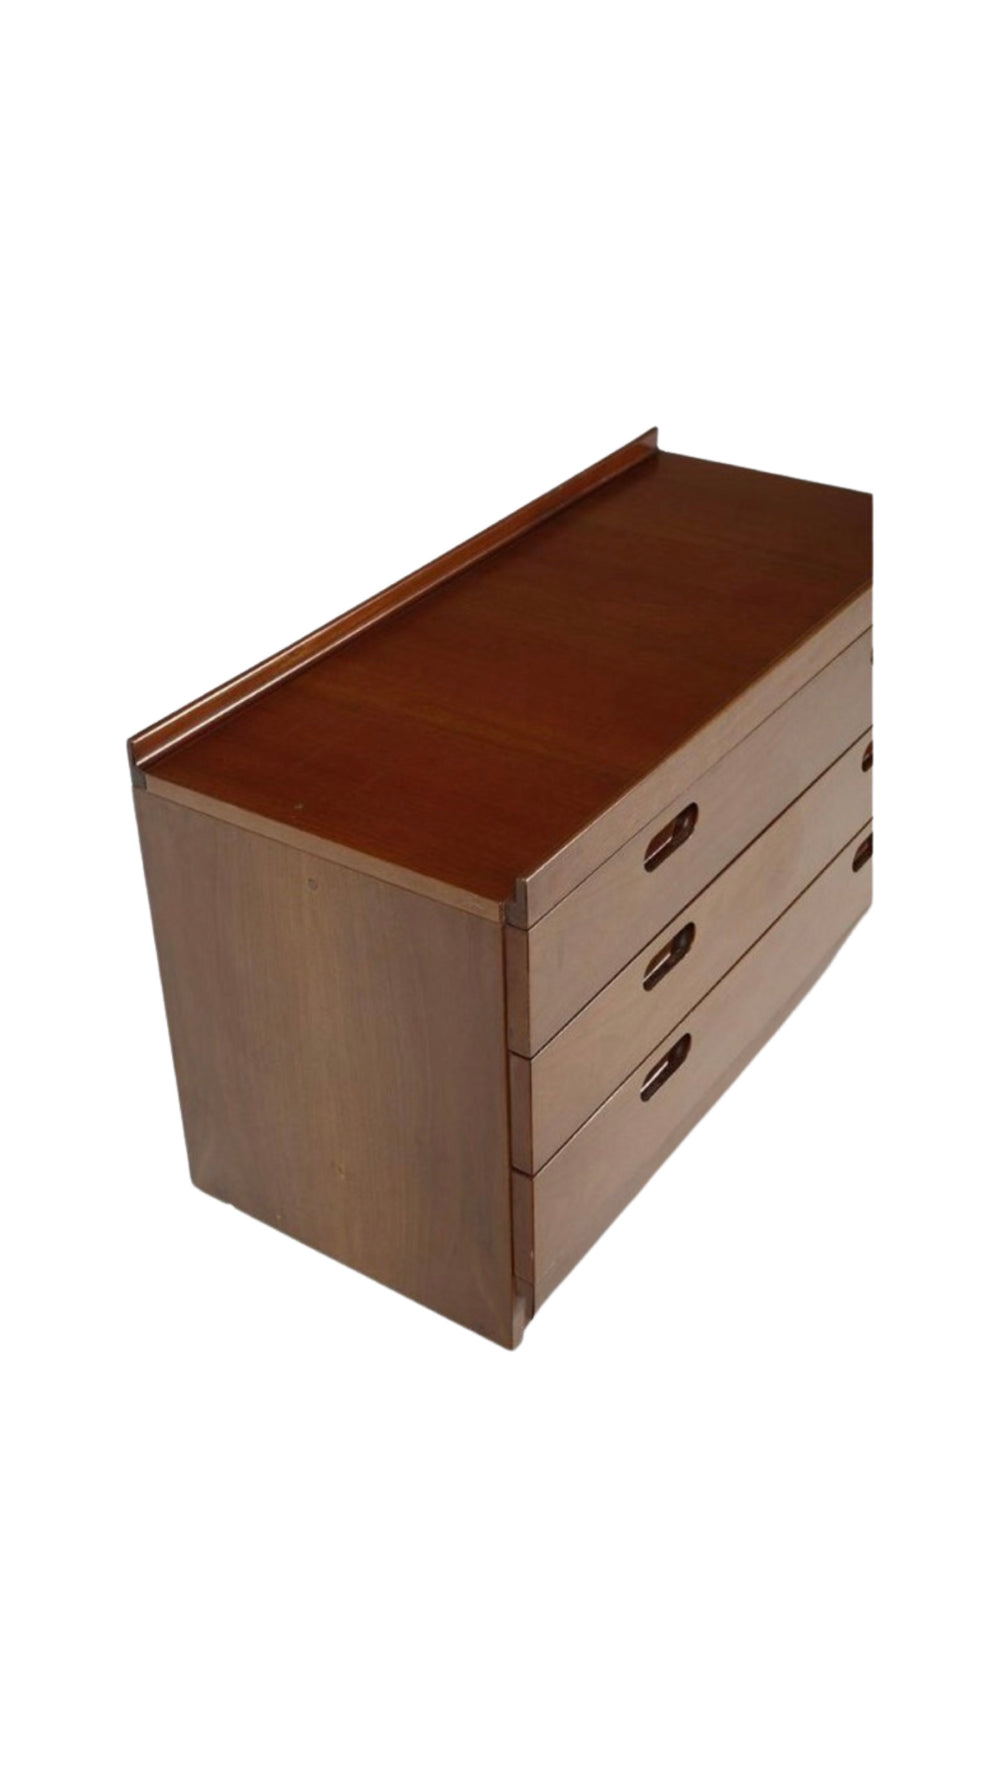 Tito Agnoli "Fiorenza" three drawer modular chest for Molteni & C, Italy, 1960s